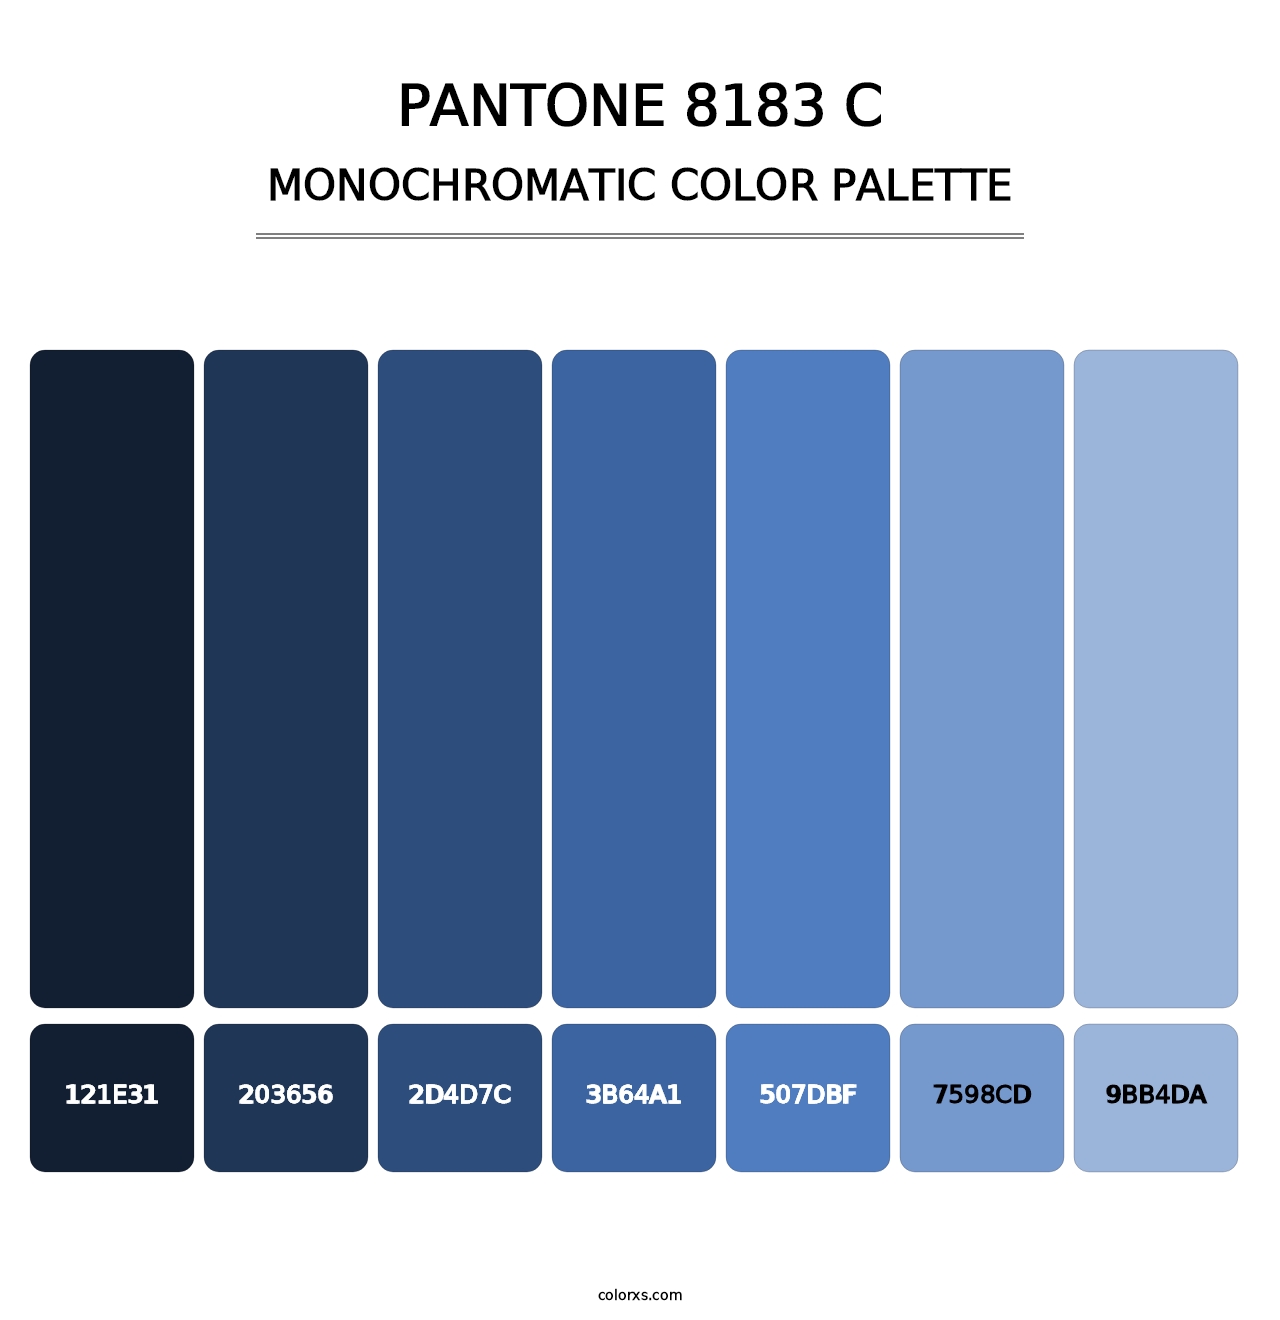 PANTONE 8183 C - Monochromatic Color Palette